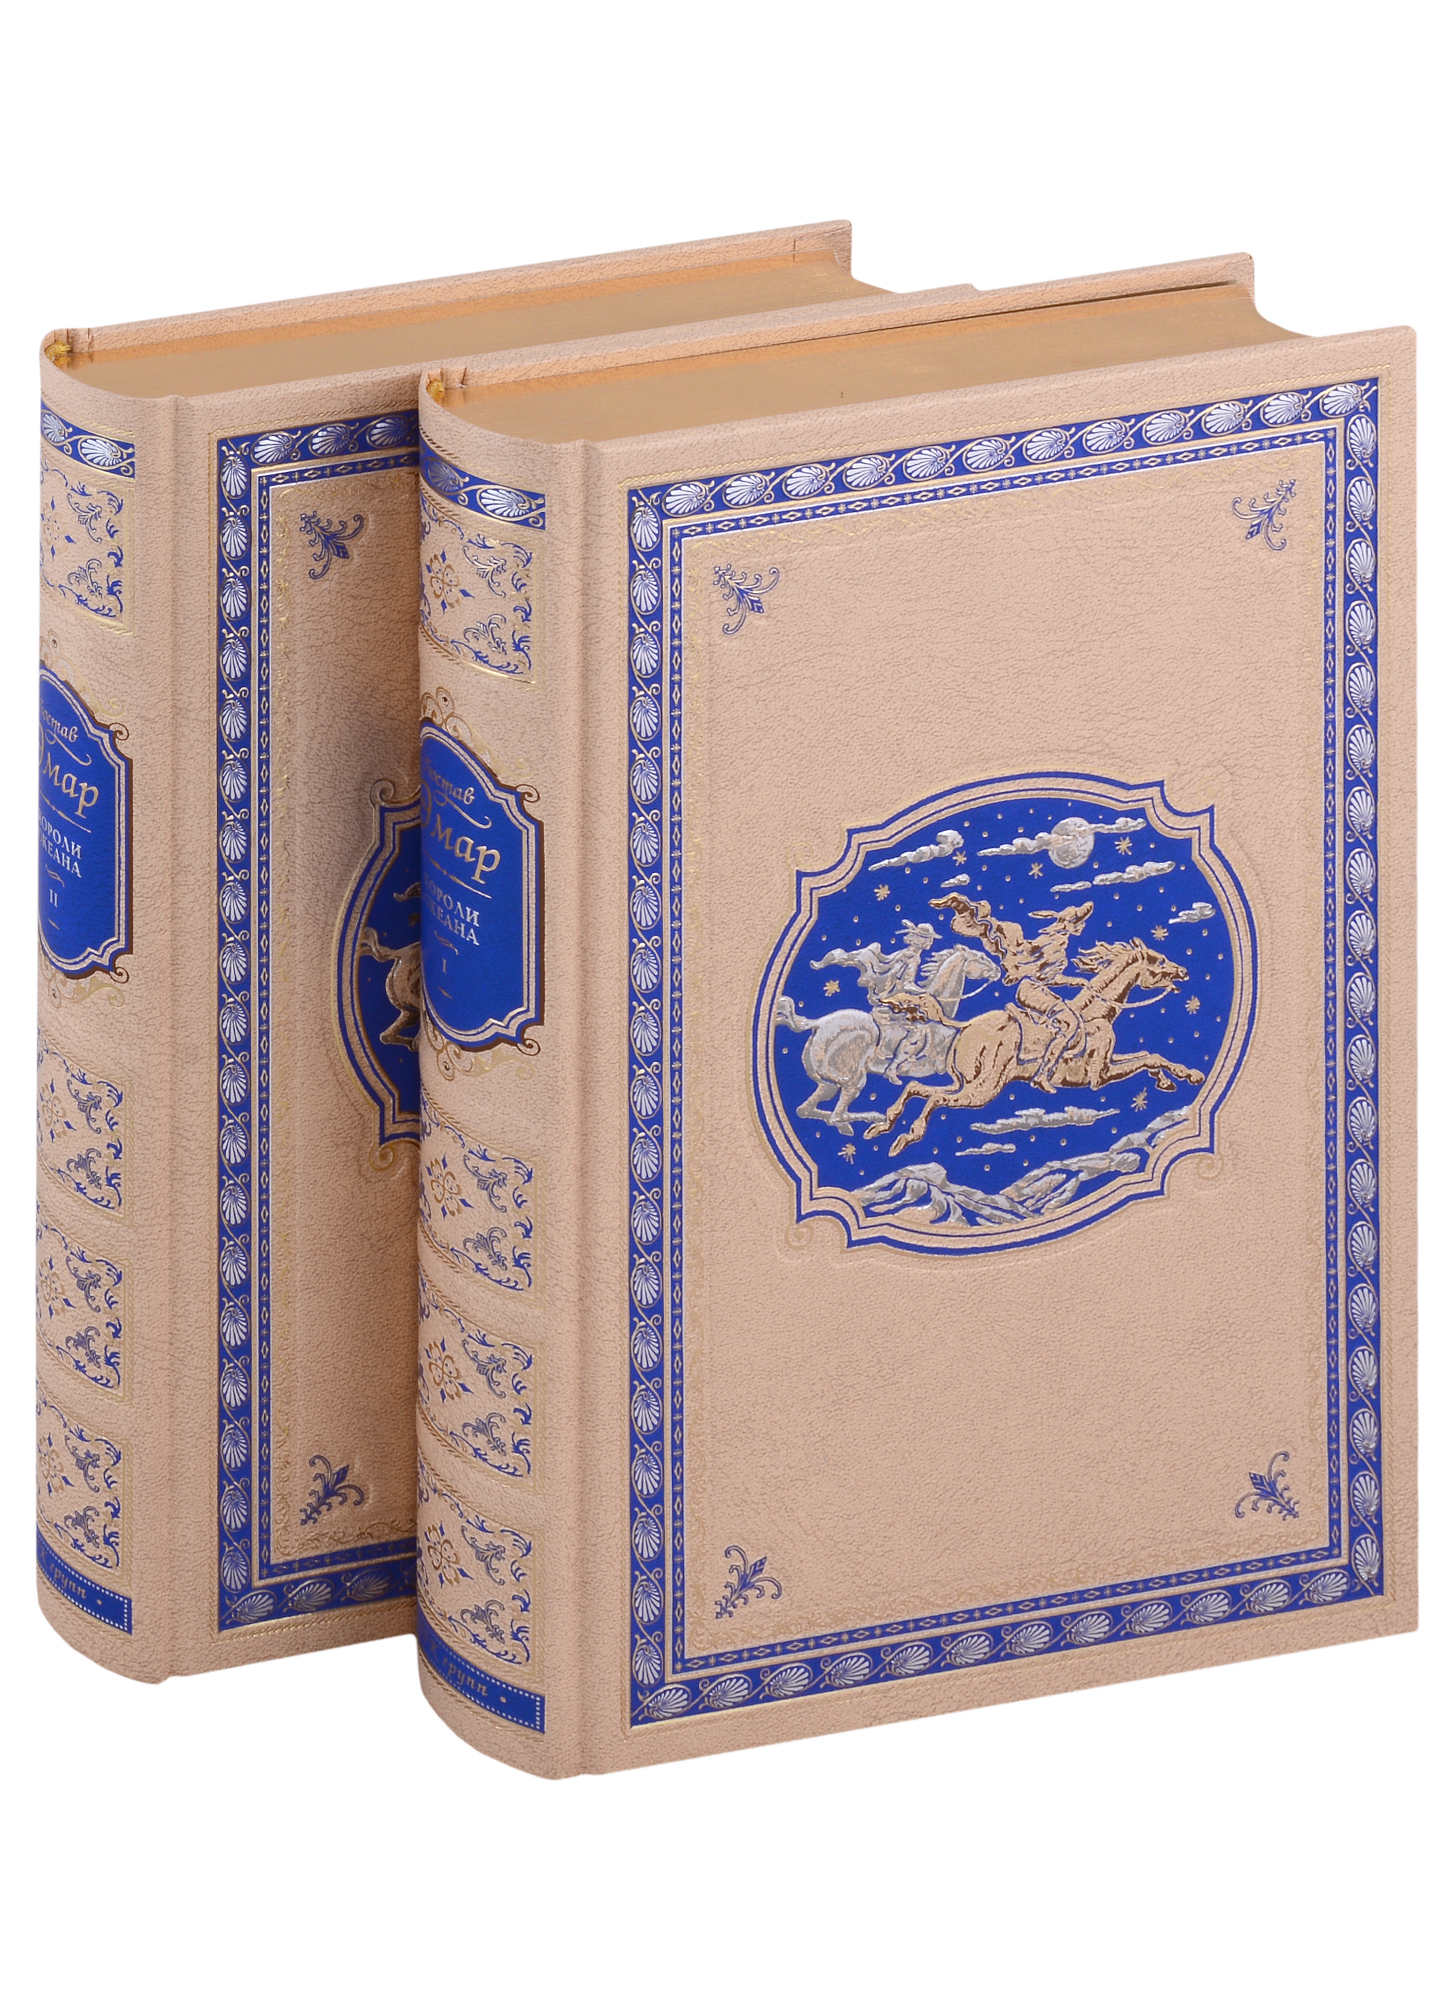 Эмар Гюстав - Короли океана: в 2 томах: Том I. Олоне, Том II. Тихий ветерок (комплект из 2 книг)